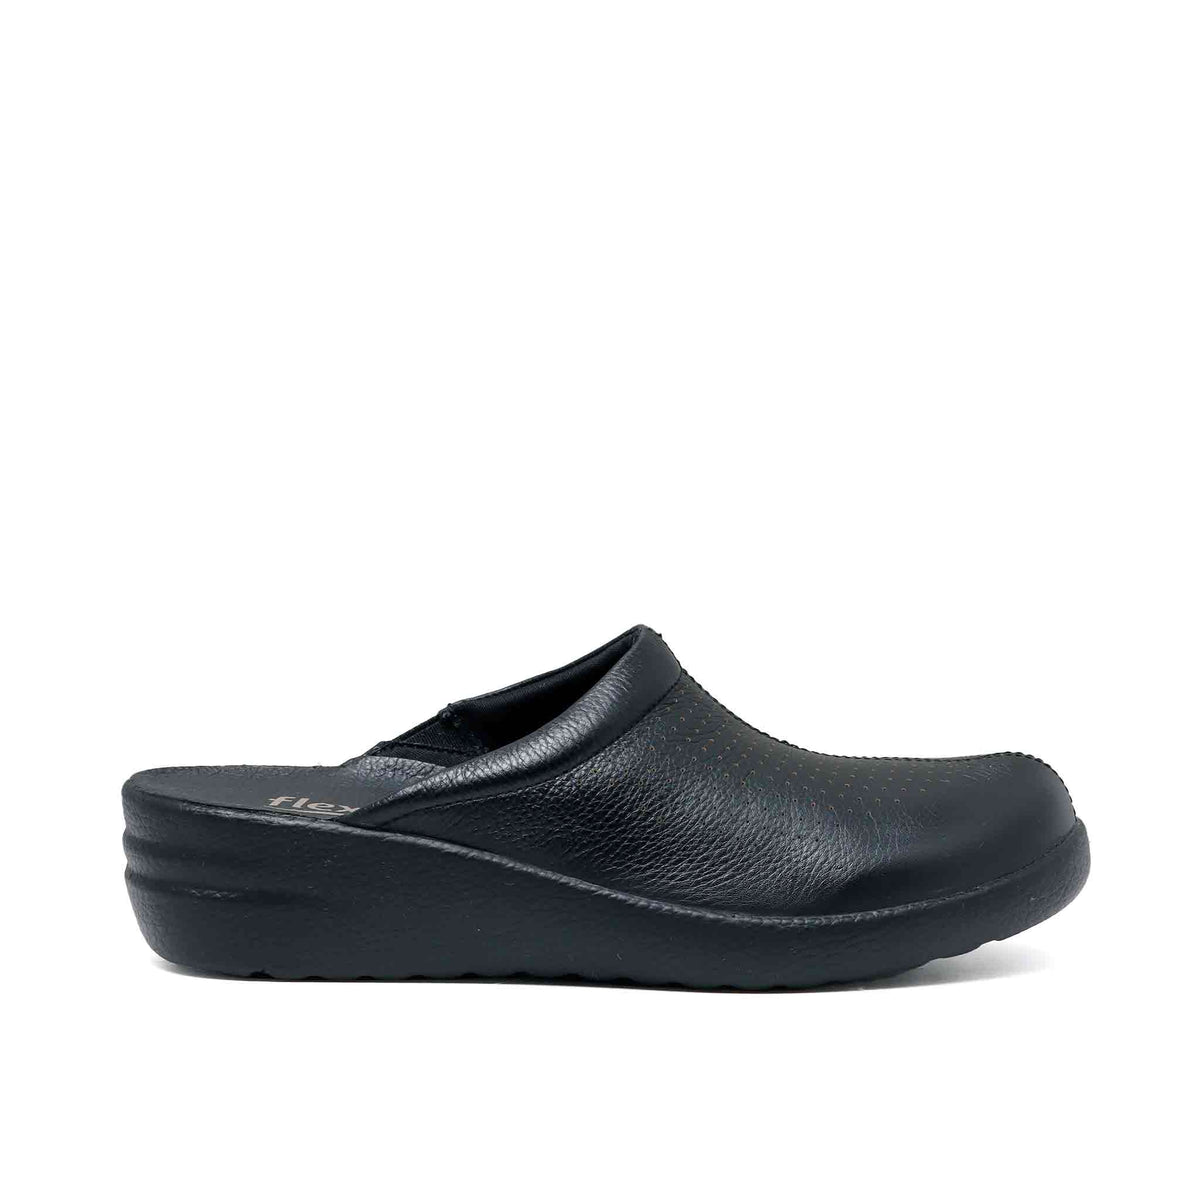 Zapatos Para Mujer Flexi Cómodos Casuales Negros negro 23 Flexi 32603N